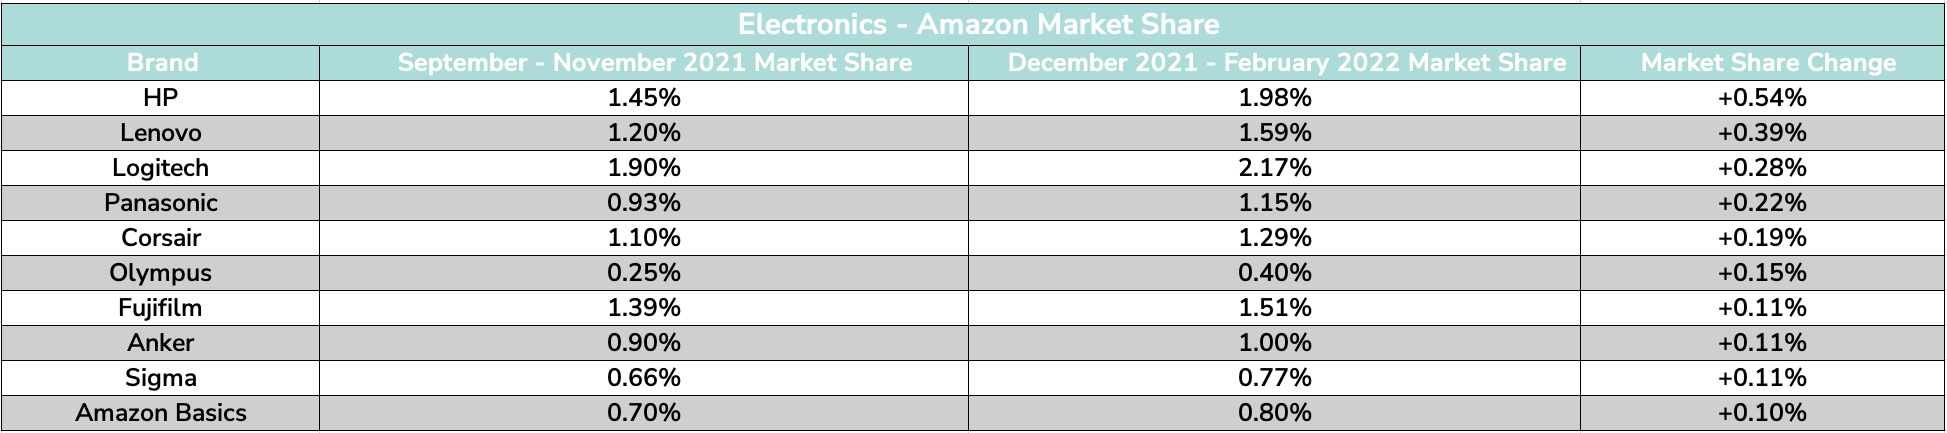 Electronics- Amazon Market Share